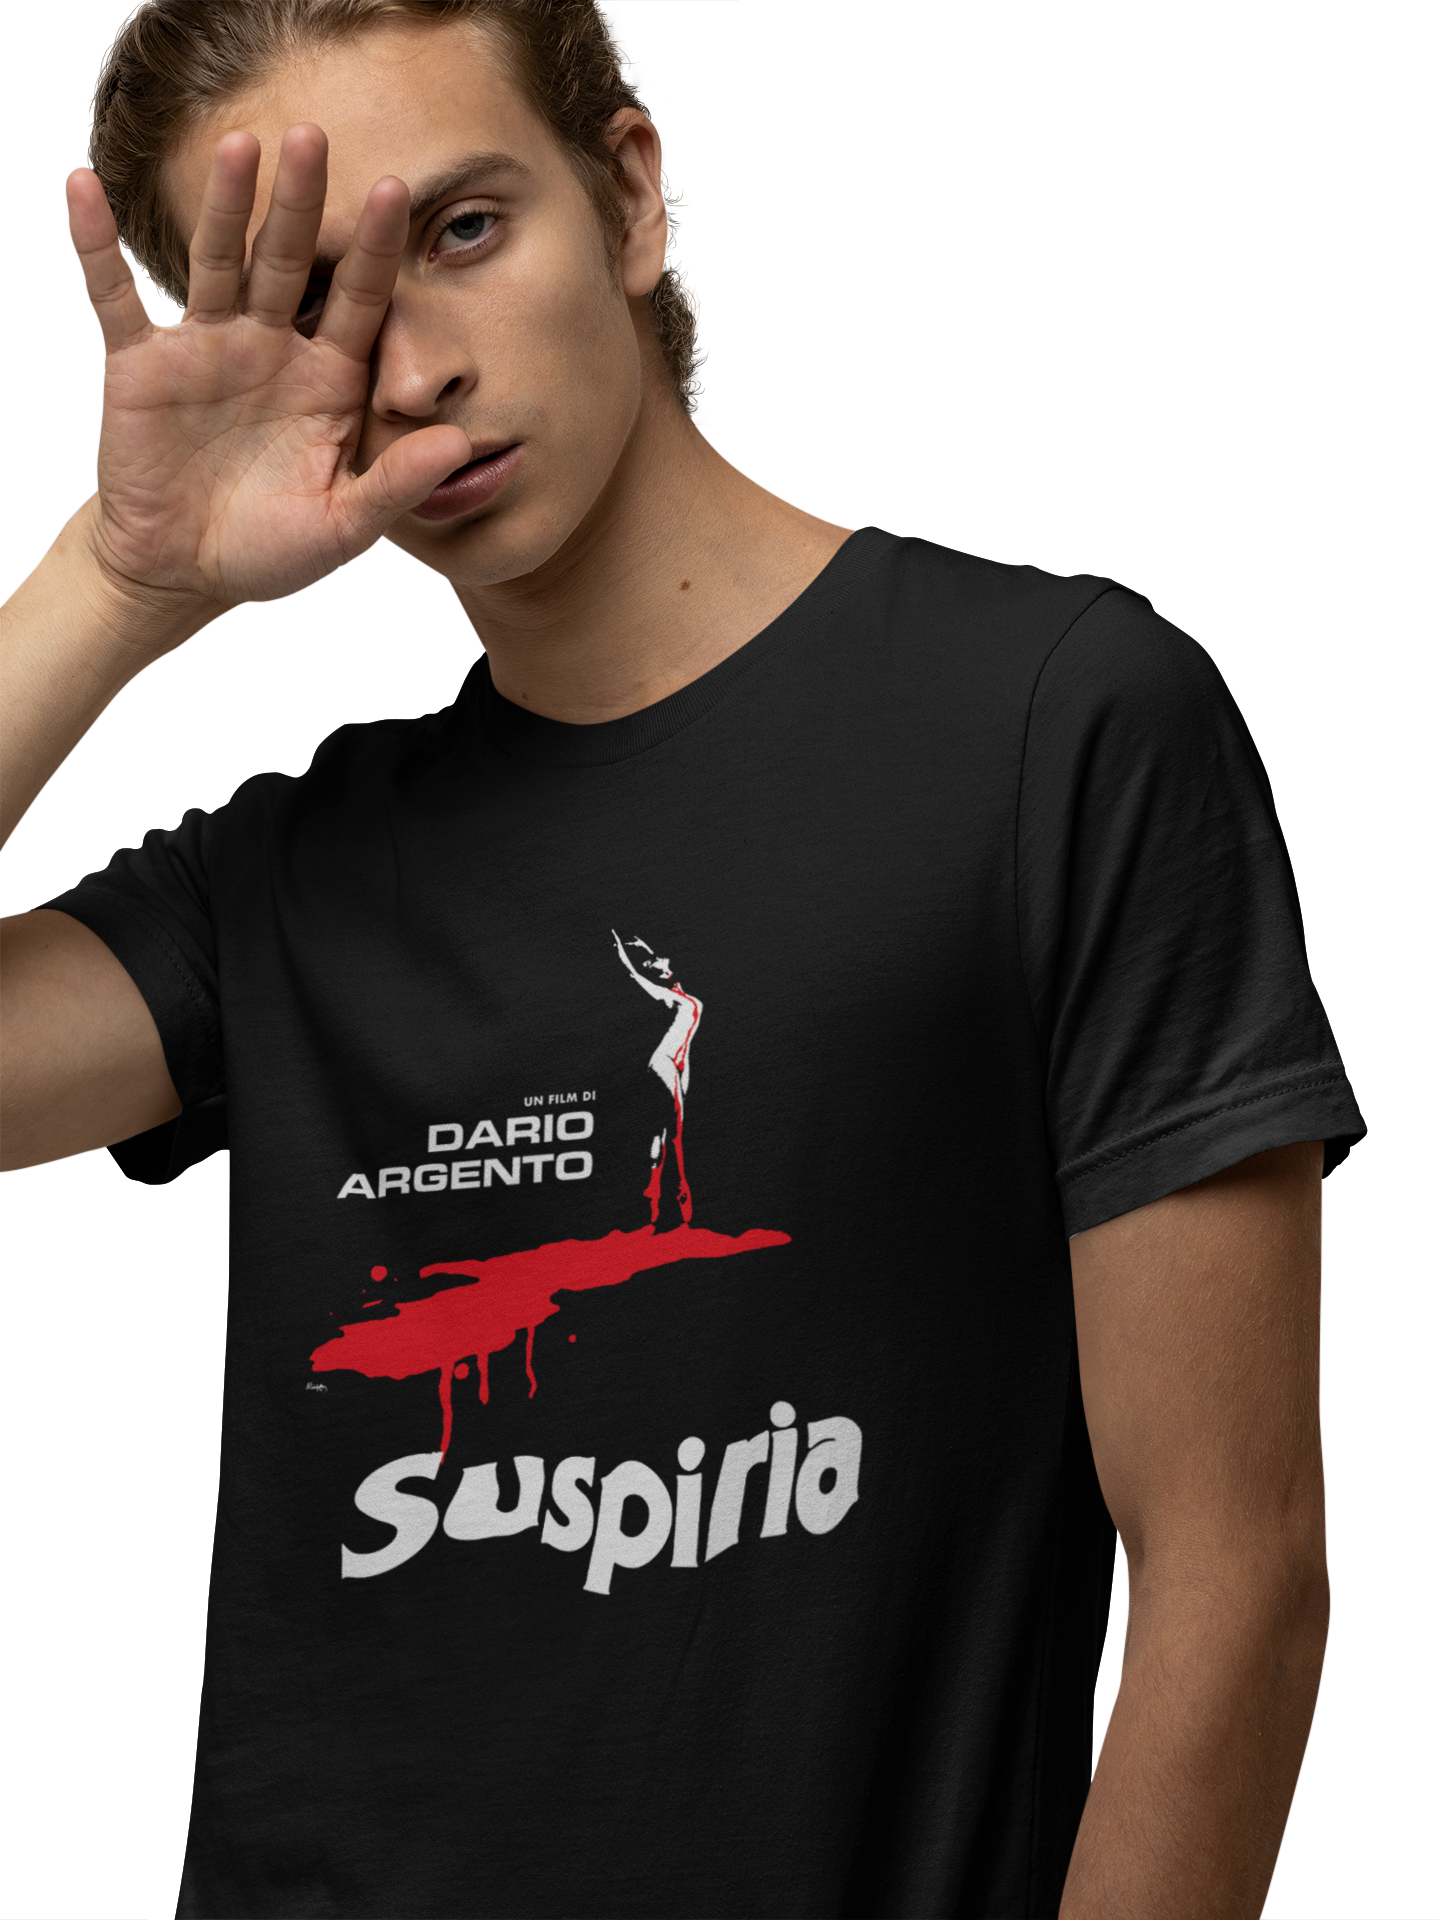 DARIO ARGENTO: "SUSPIRIA" CLASSIC T-SHIRT